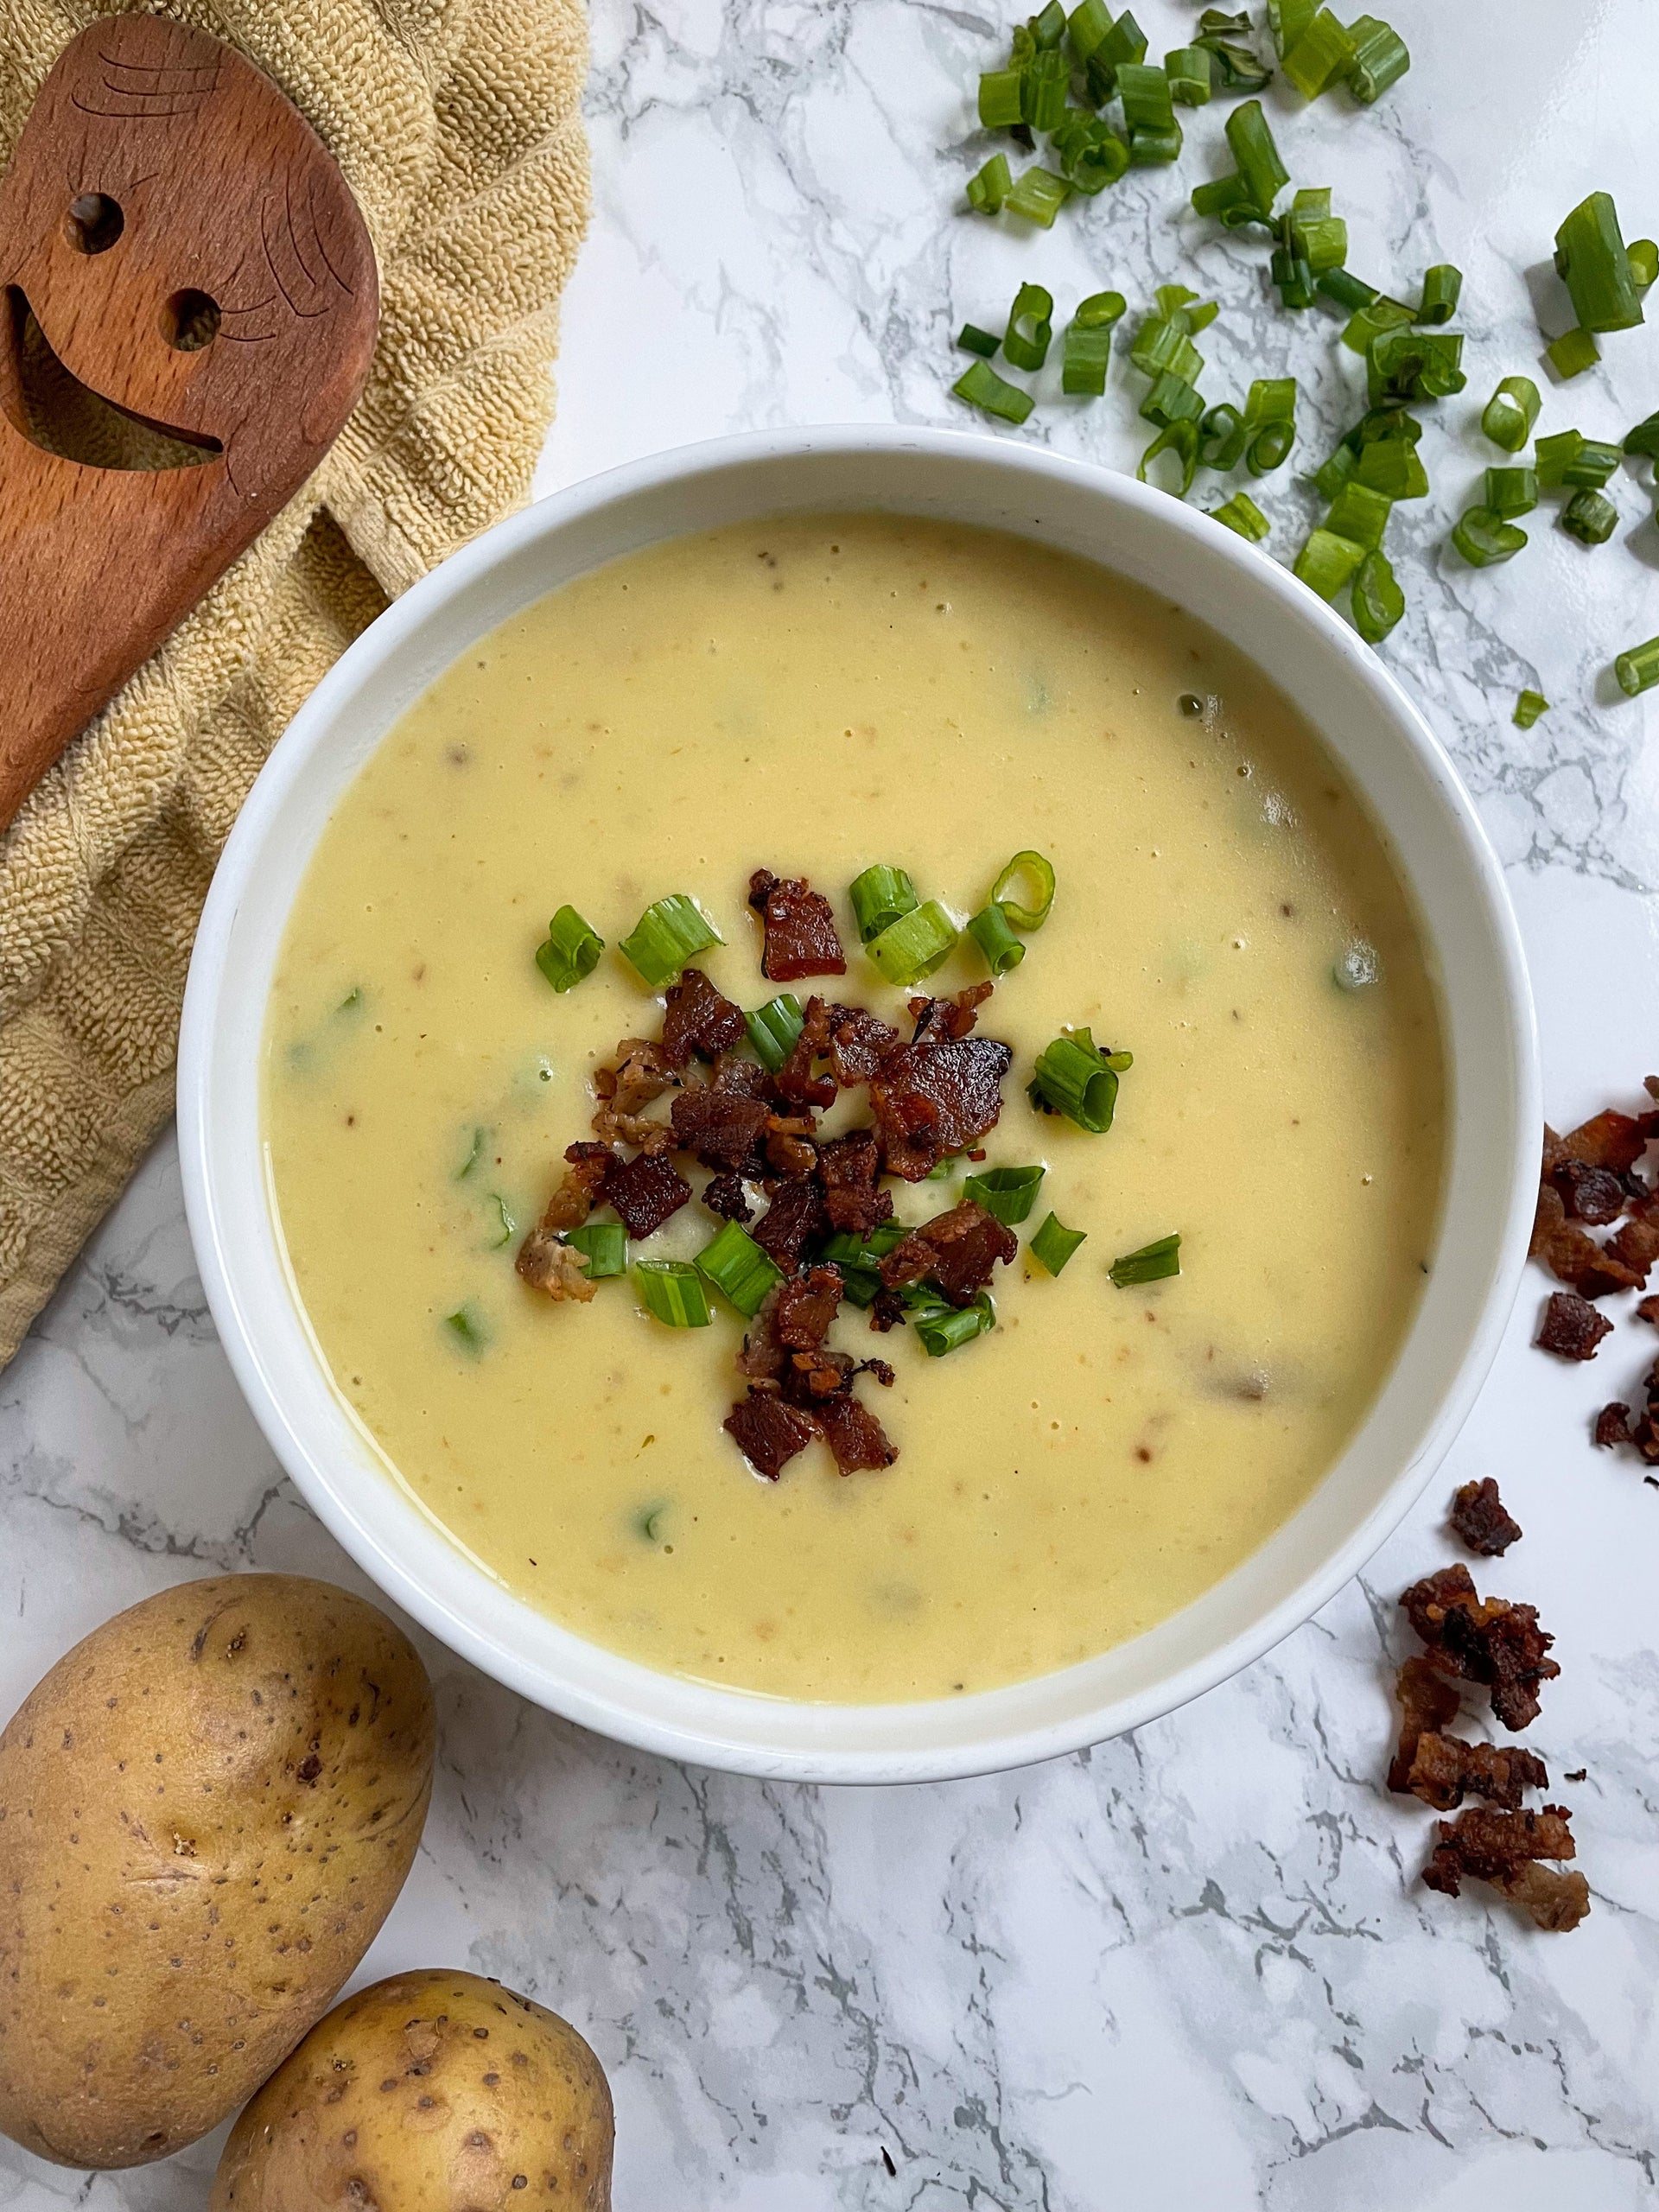 Instant Pot Parsnip Soup – Pat Cooks